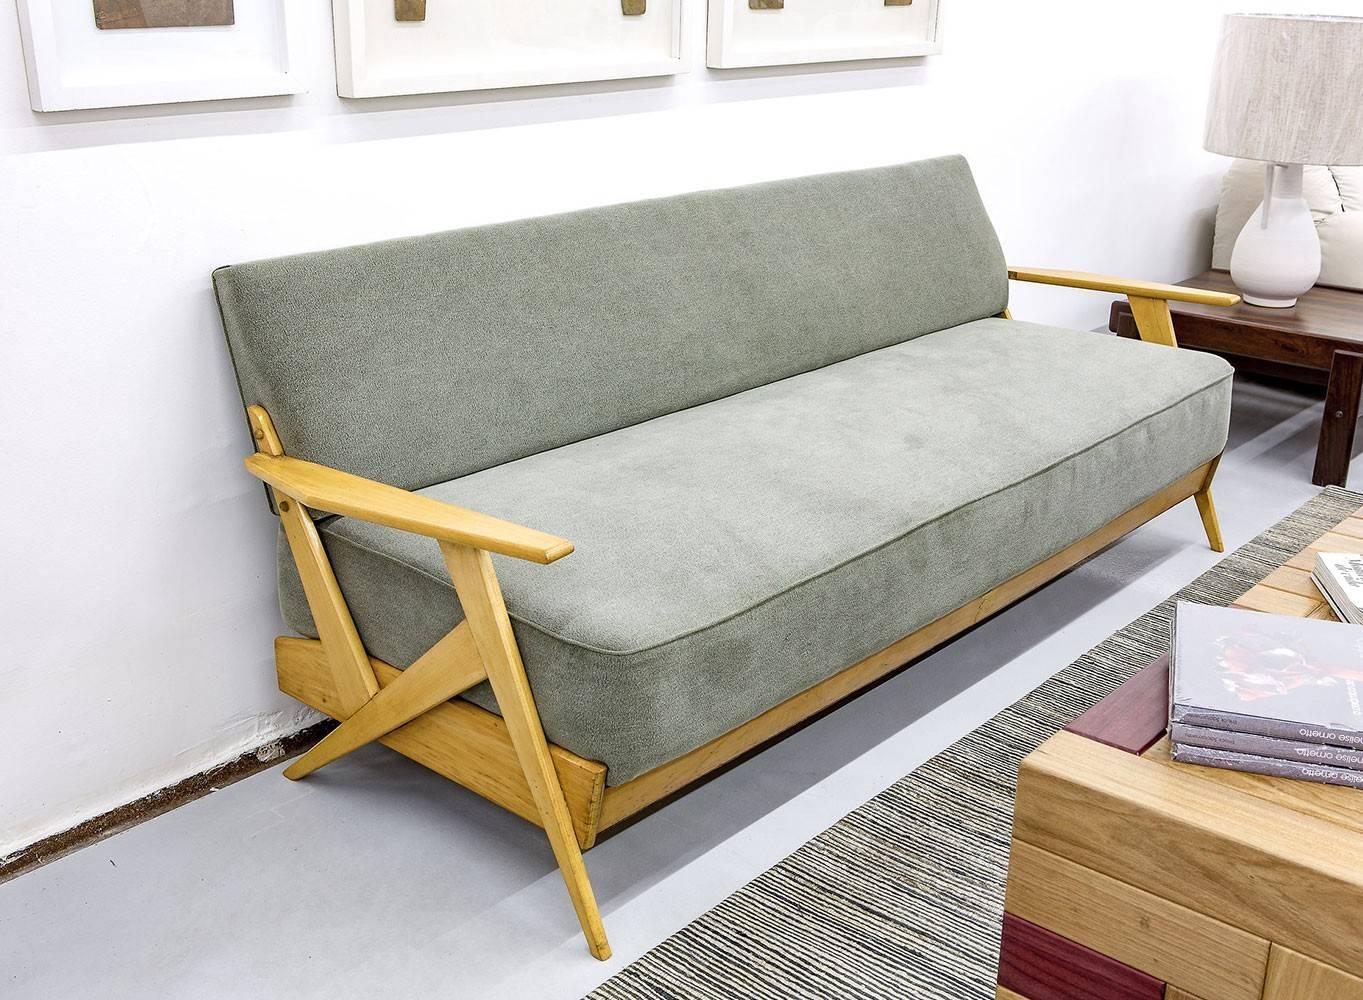 Dieses Sofa aus der Mitte des Jahrhunderts, aus Holz und grauem Stoff, wurde in den 1950er Jahren in São Paulo von Zanines Studio hergestellt und ist ein gutes Beispiel für seine früheren Stücke.

José Zanine Caldas war ein Designer, Architekt und